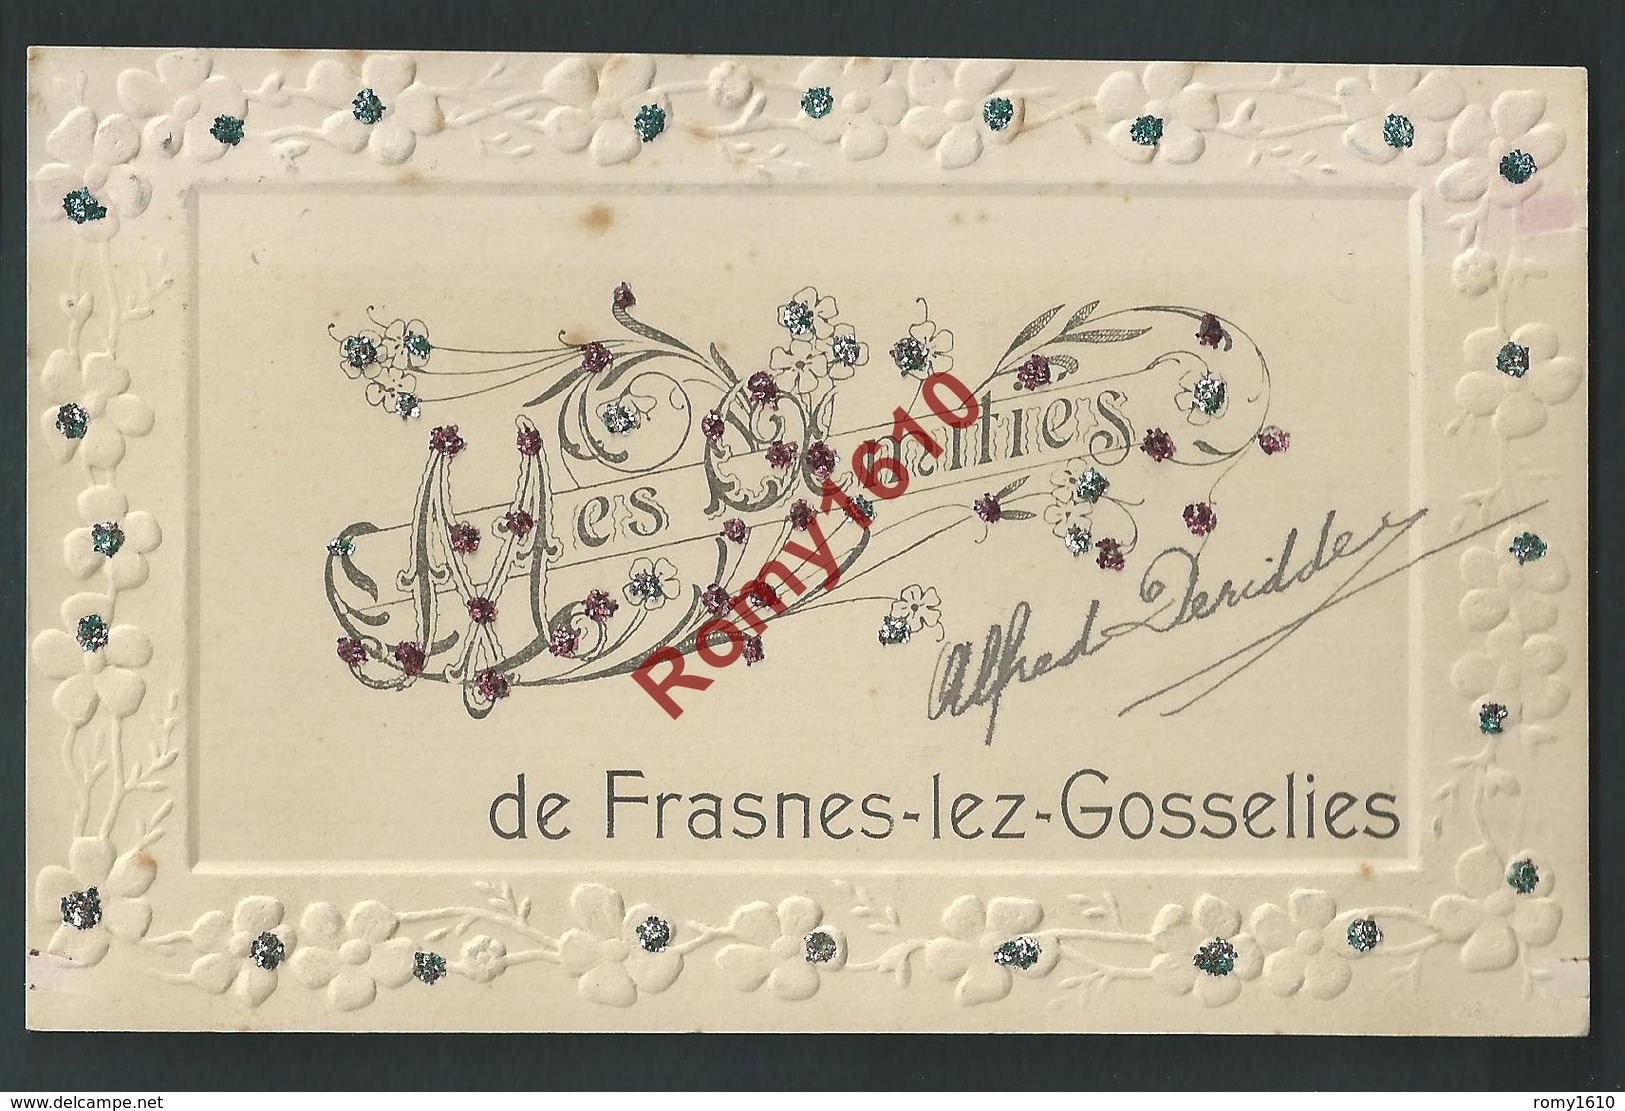 Mes Amitiés De Frasnes-lez-Gosselies.(Les Bons Villers) Carte Gaufrée Et Pailletée. Circulé En 1907. 2 Scans. - Les Bons Villers